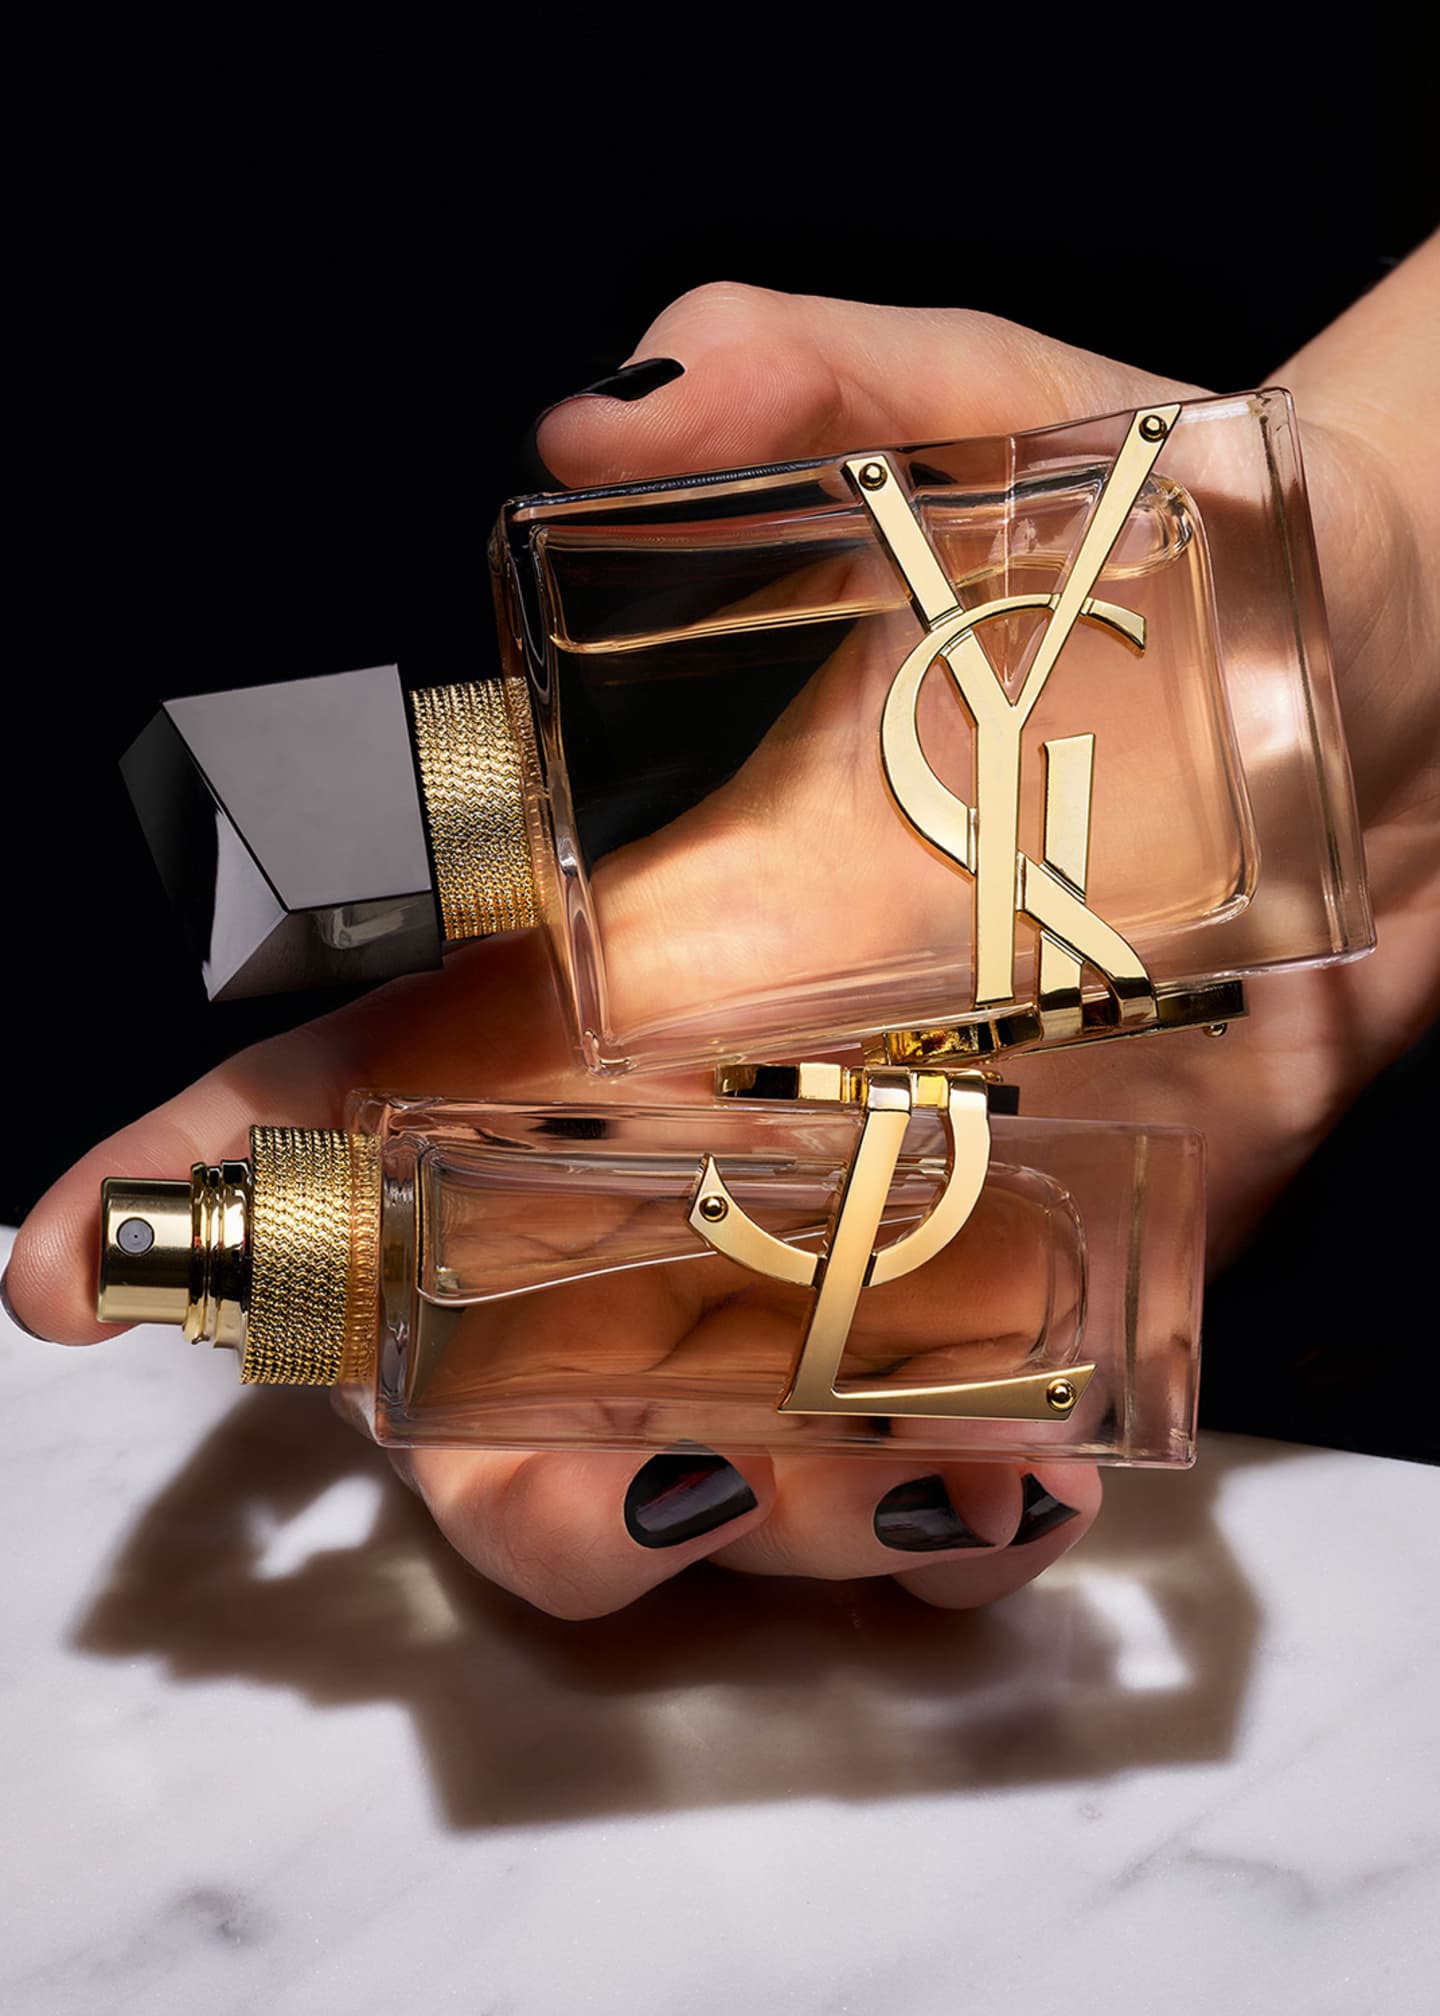 Yves Saint Laurent Beaute Libre Eau de Parfum - Bergdorf Goodman